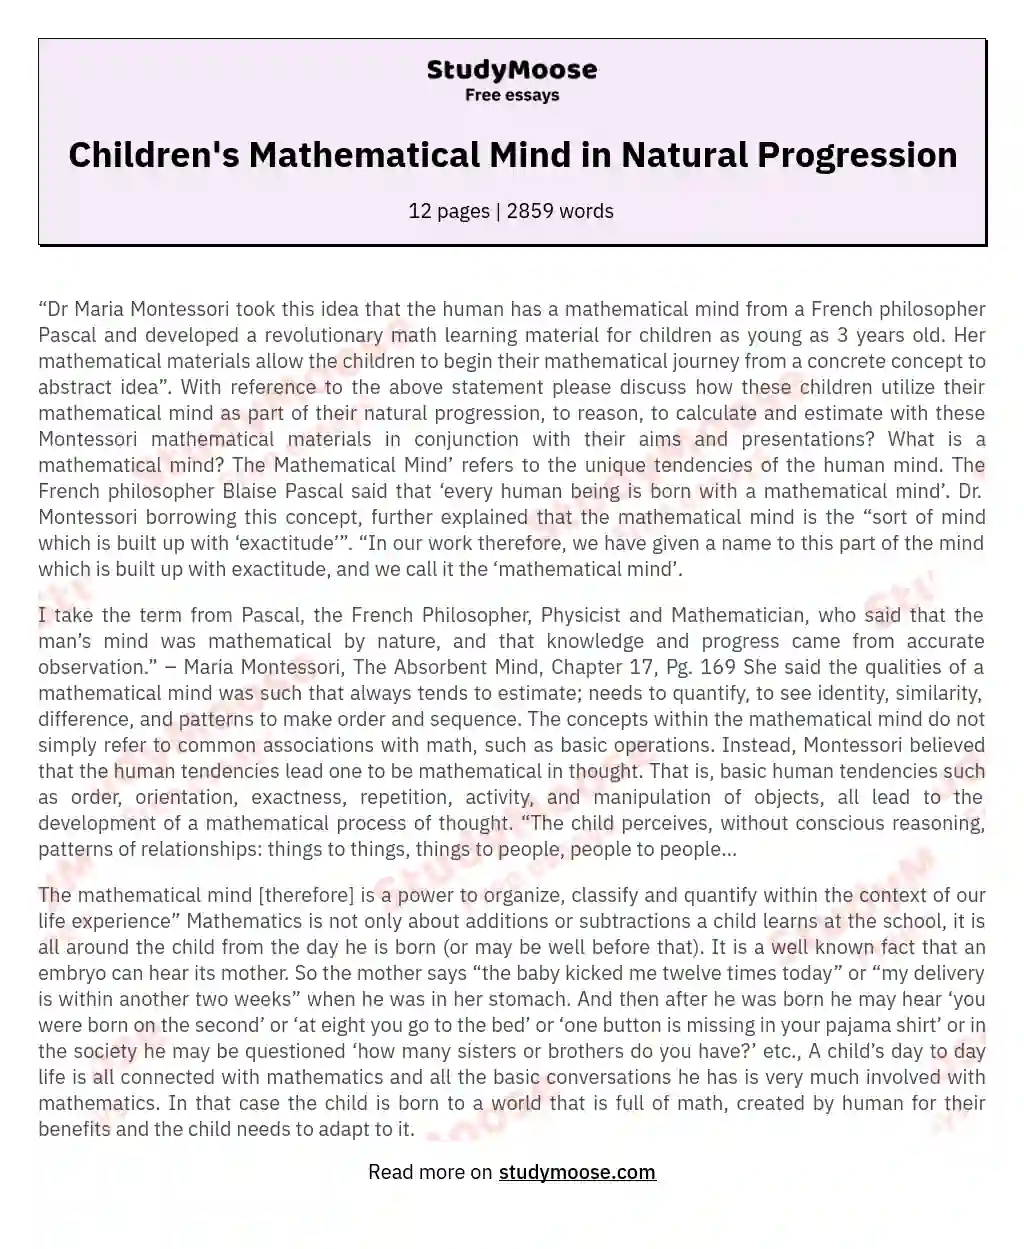 Children's Mathematical Mind in Natural Progression essay